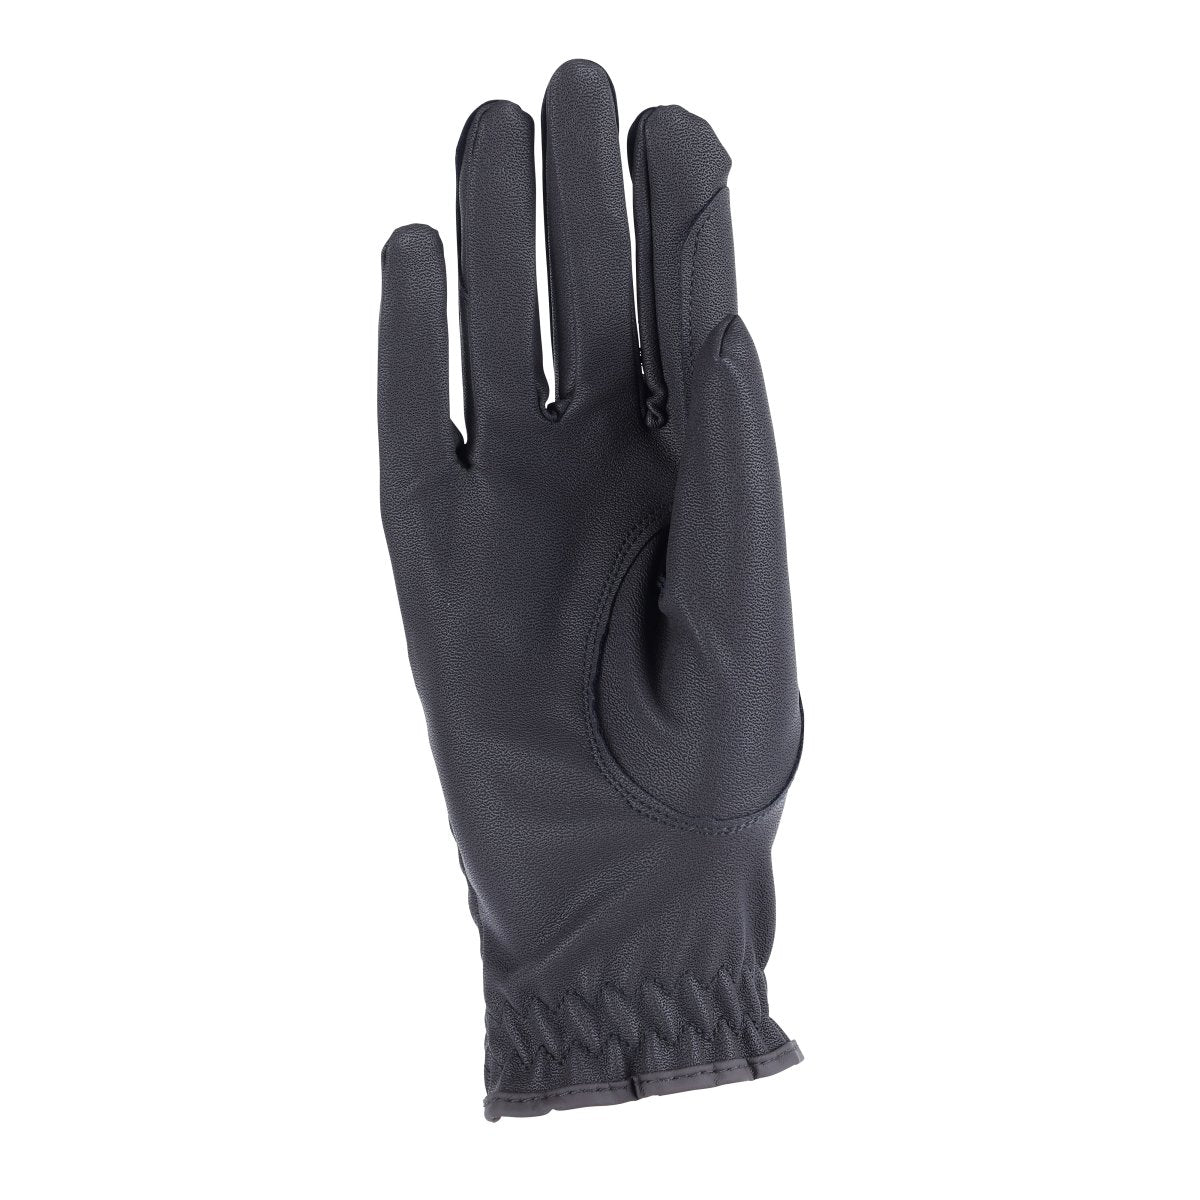 Aubrion Arene FlexFit Riding Gloves - Black - XS